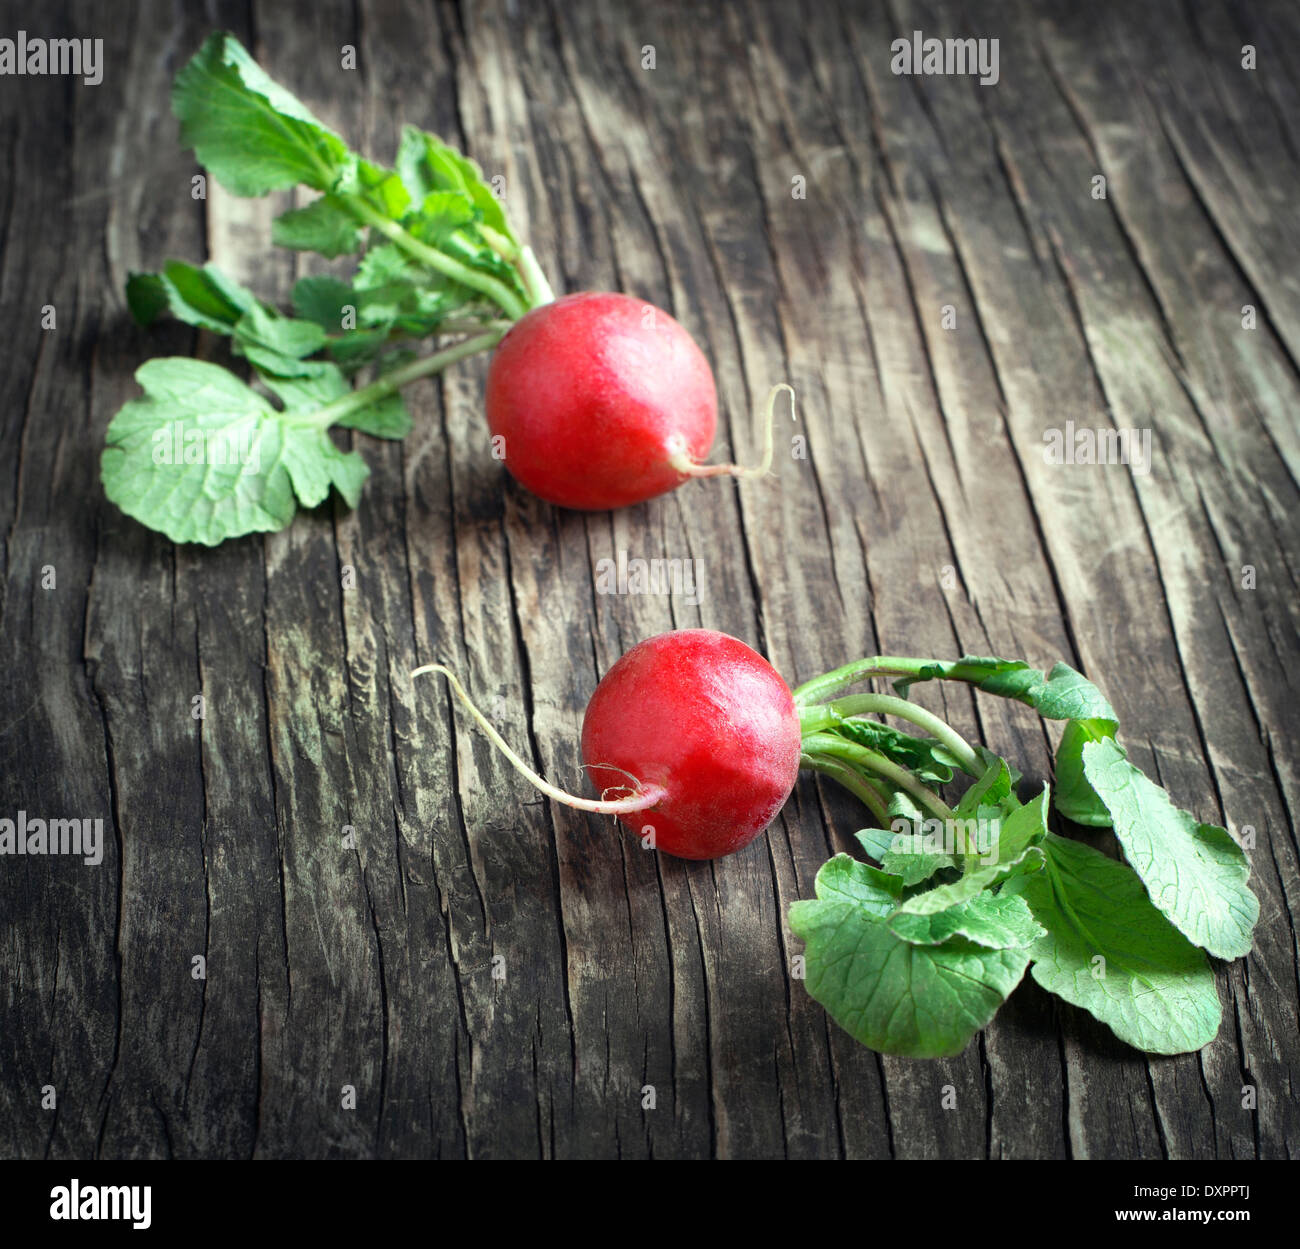 Fresh radish on wooden background Stock Photo